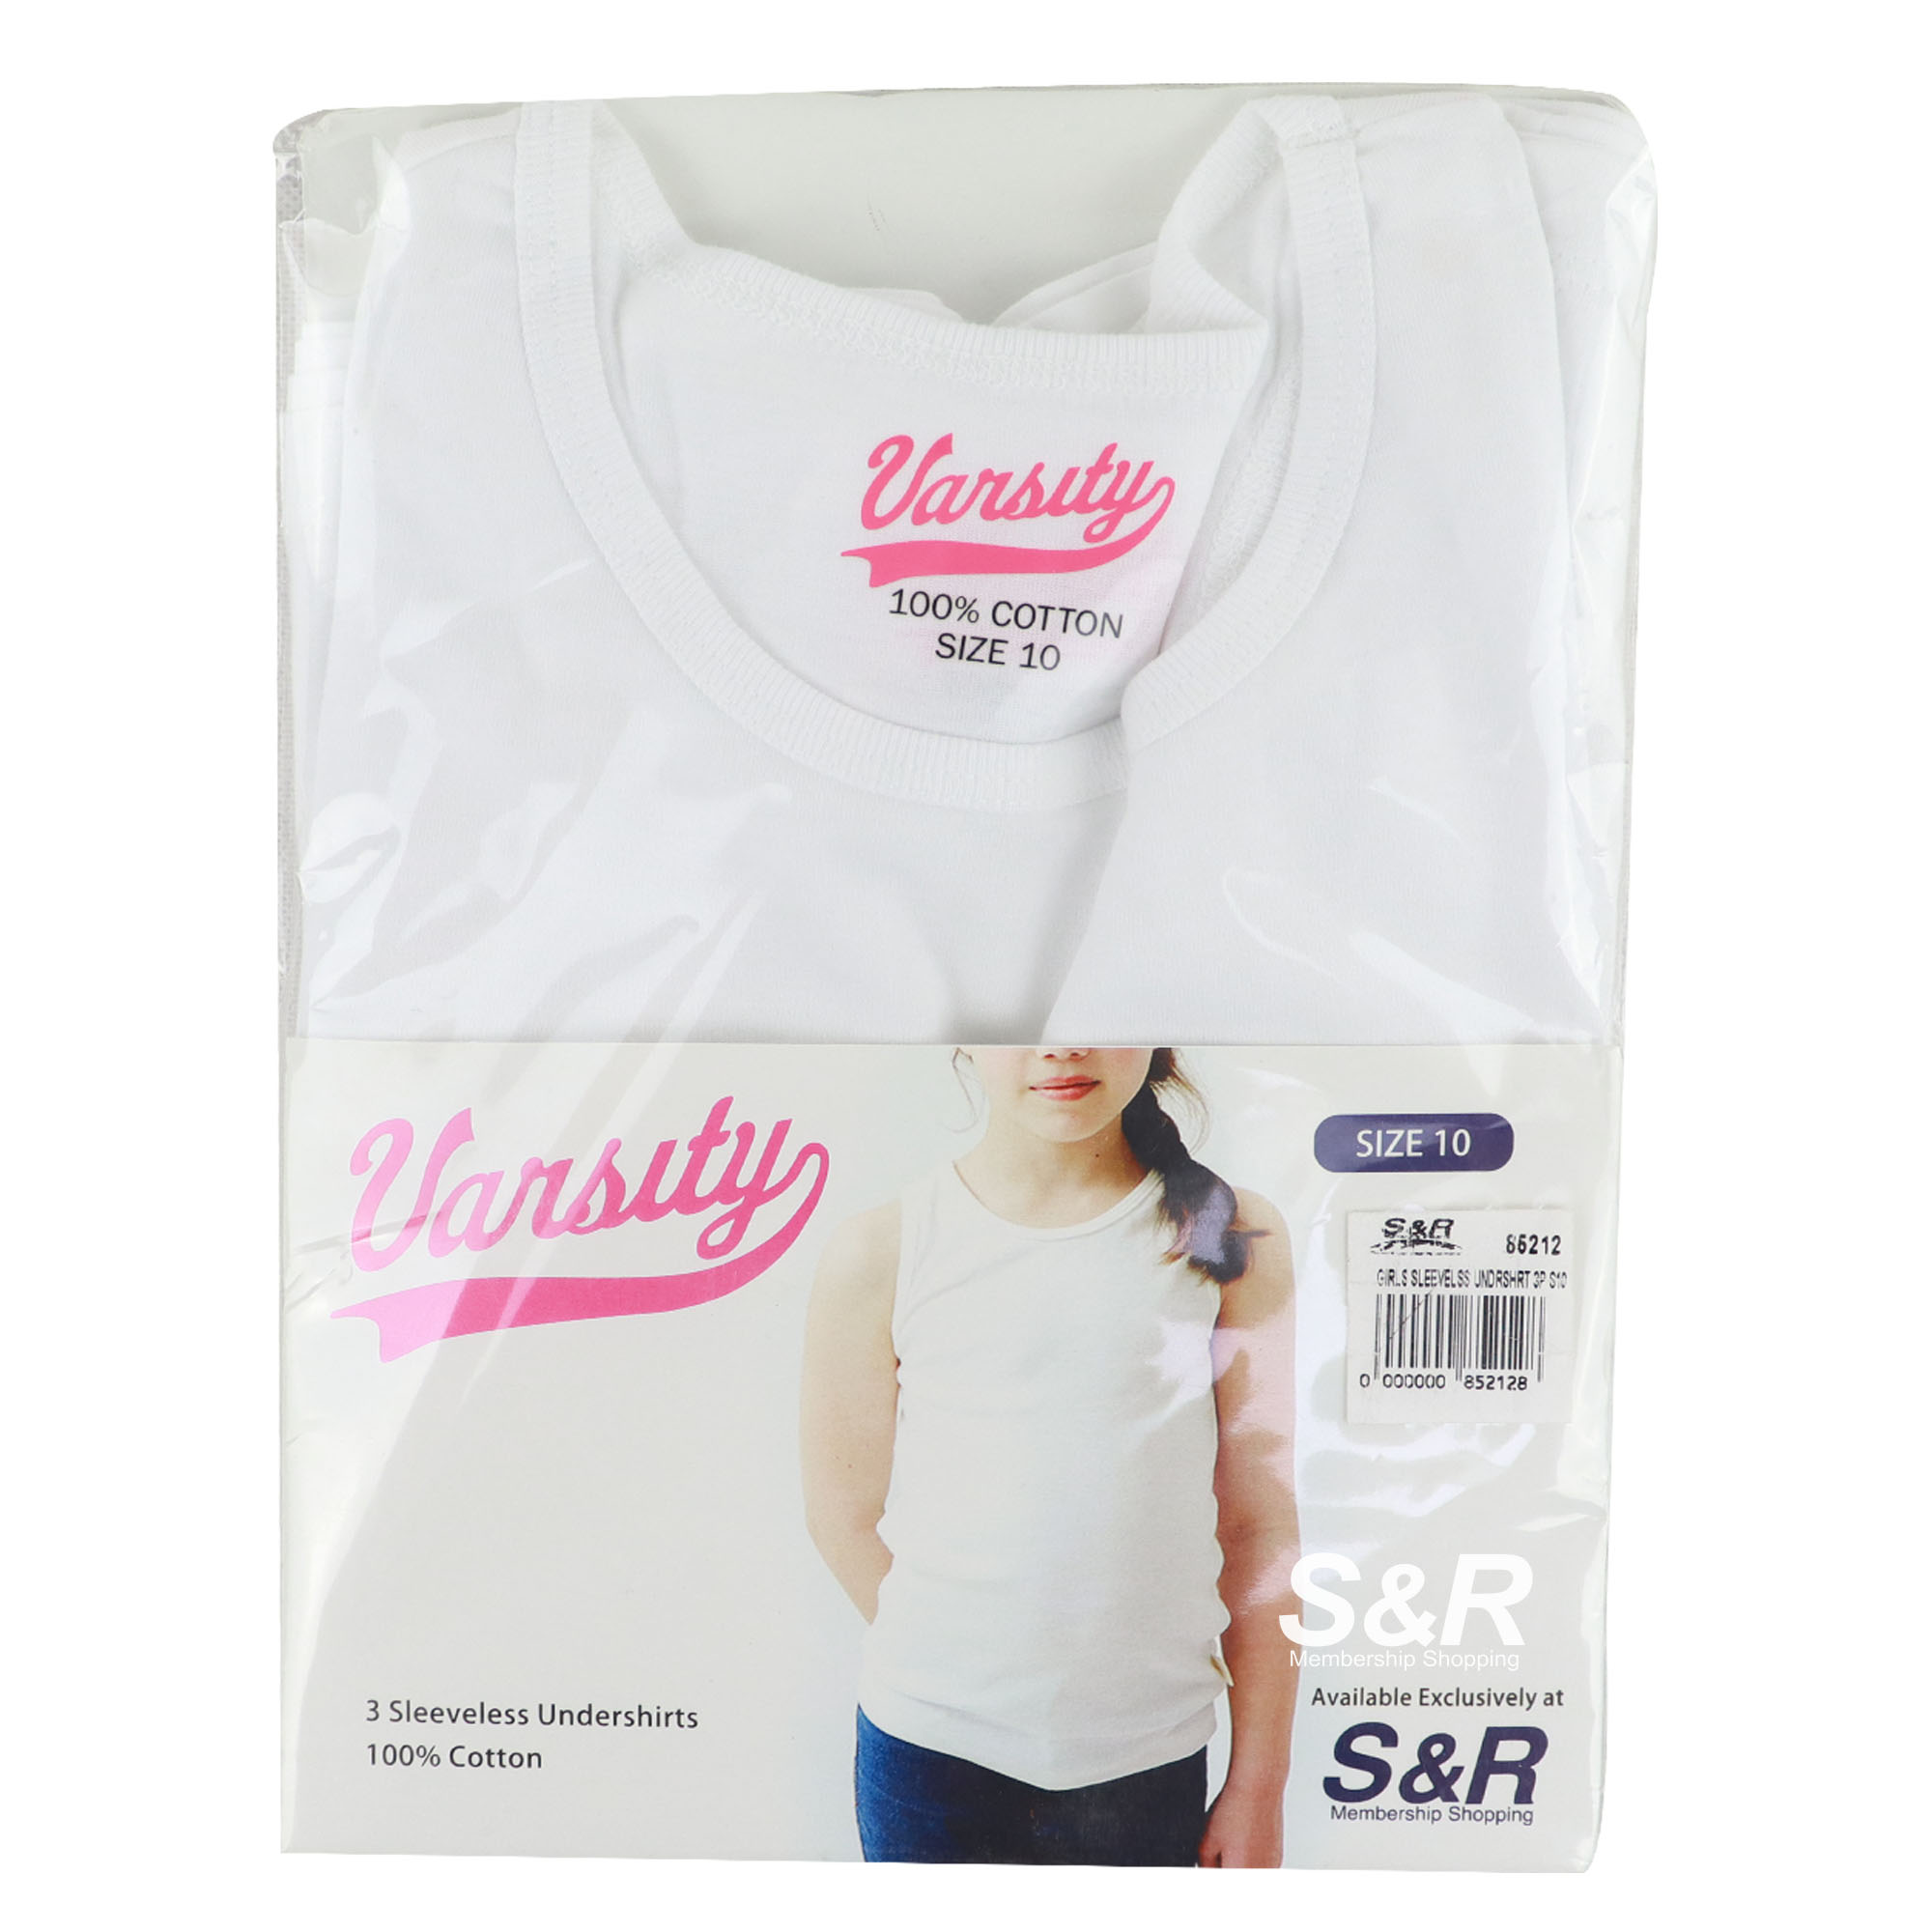 Varsity Girls Sleeveless Undershirt Size 10 3pcs